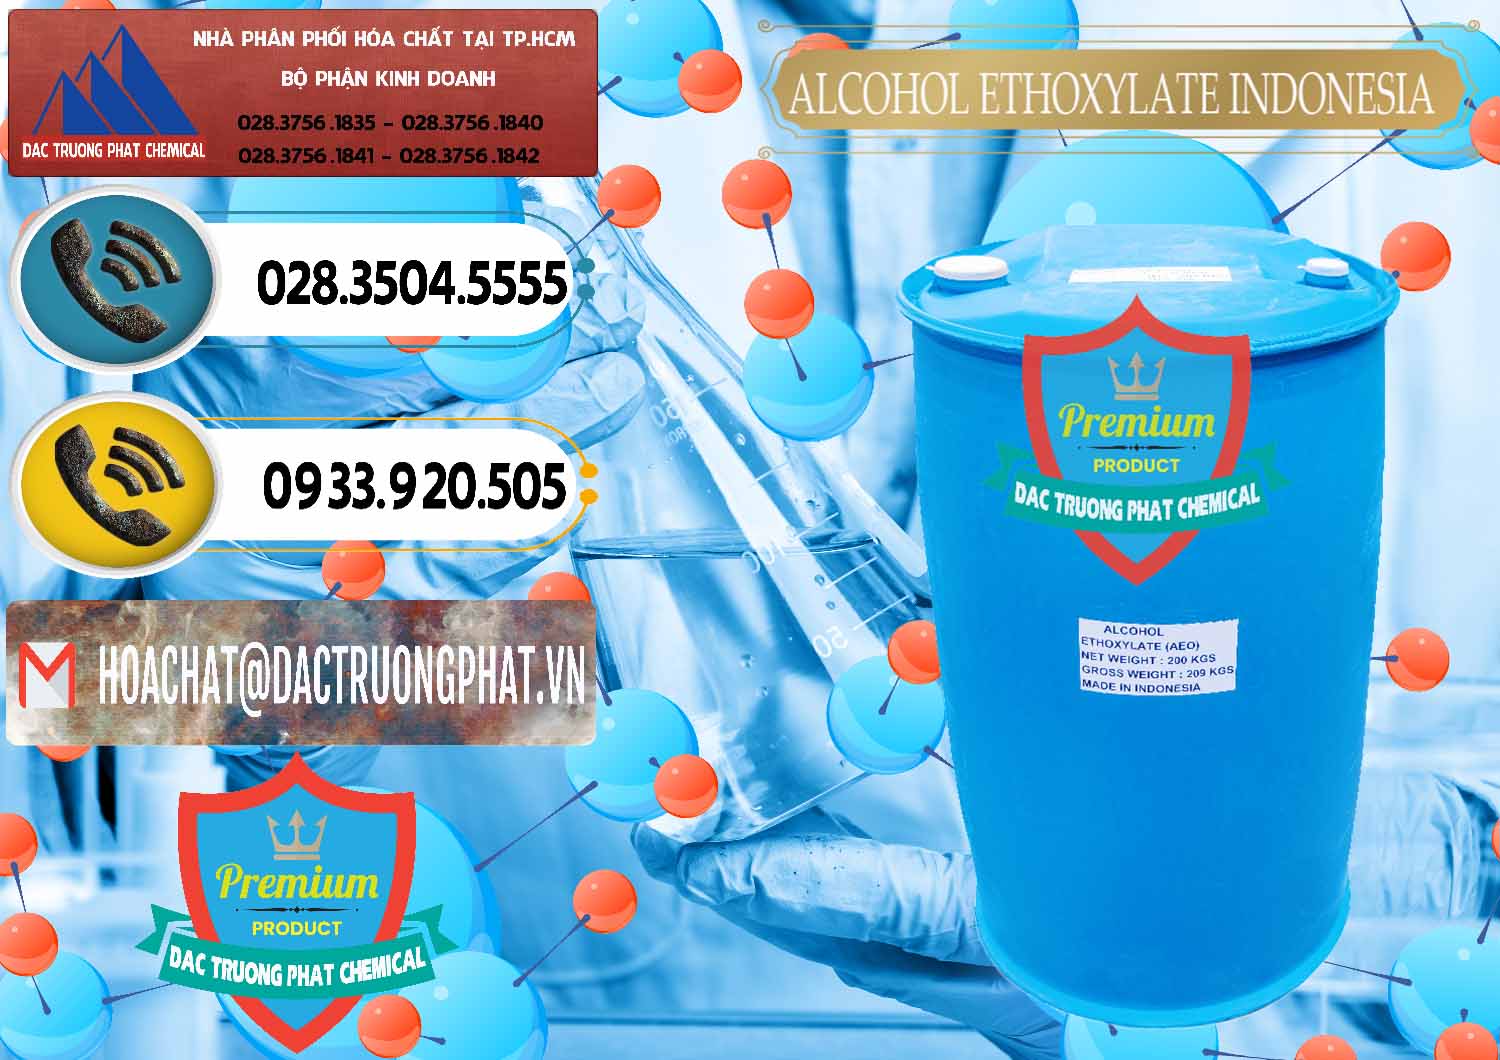 Nơi bán - cung cấp Alcohol Ethoxylate Indonesia - 0308 - Nơi cung cấp và kinh doanh hóa chất tại TP.HCM - hoachatdetnhuom.vn